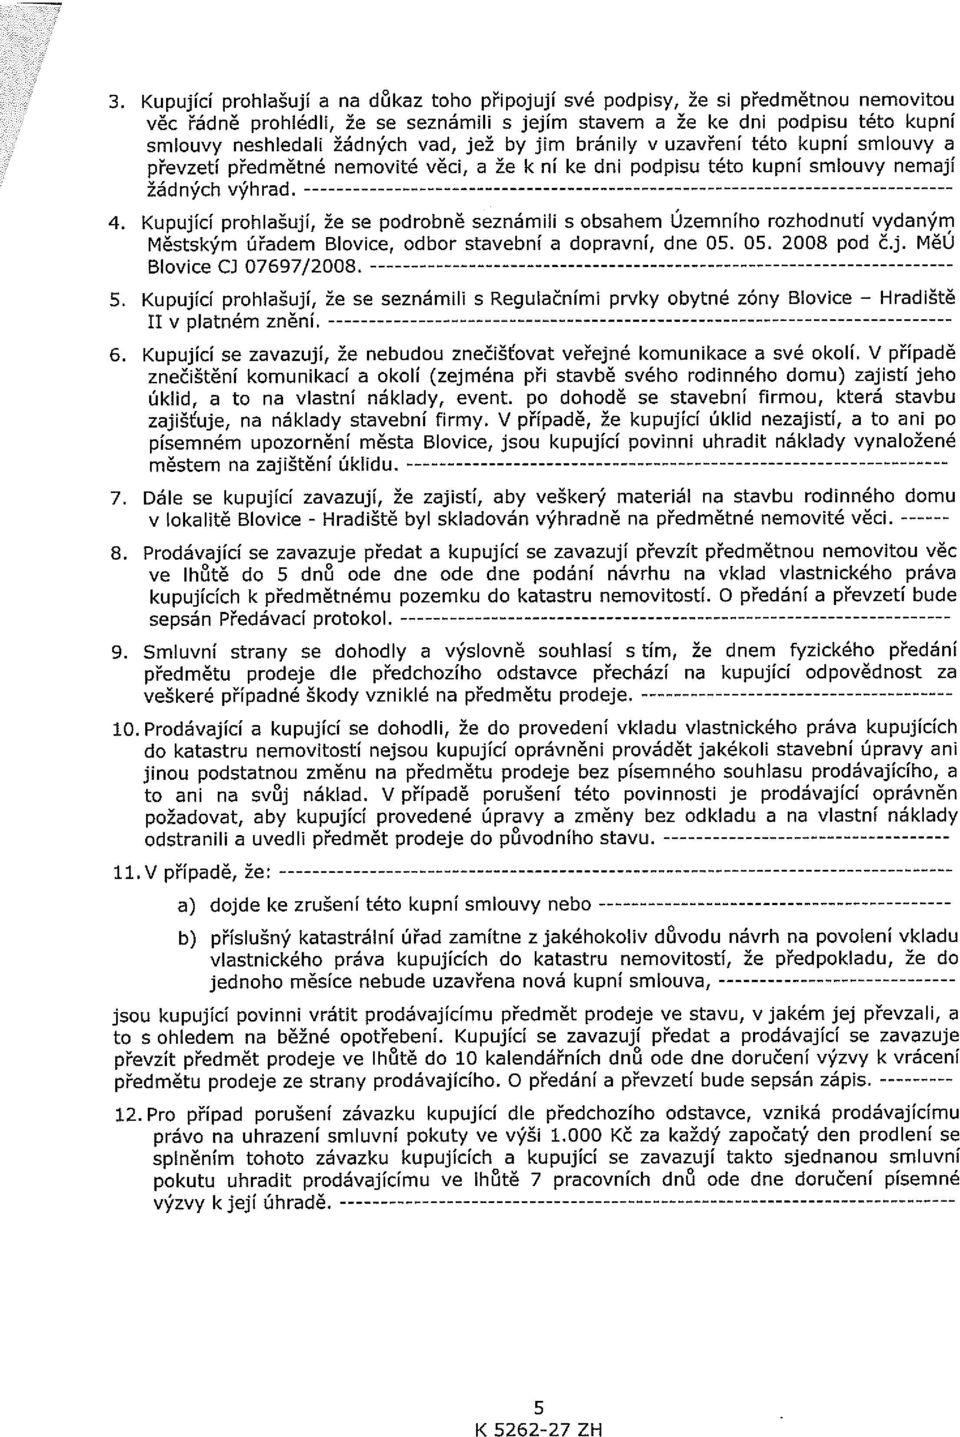 Kupující prohlašují, že se podrobně seznámili s obsahem Územního rozhodnutí vydaným Městským úřadem Blovice, odbor stavební a dopravní, dne 05. 05. 2008 pod čj. MěU Blovice CJ 07697/2008. 5.